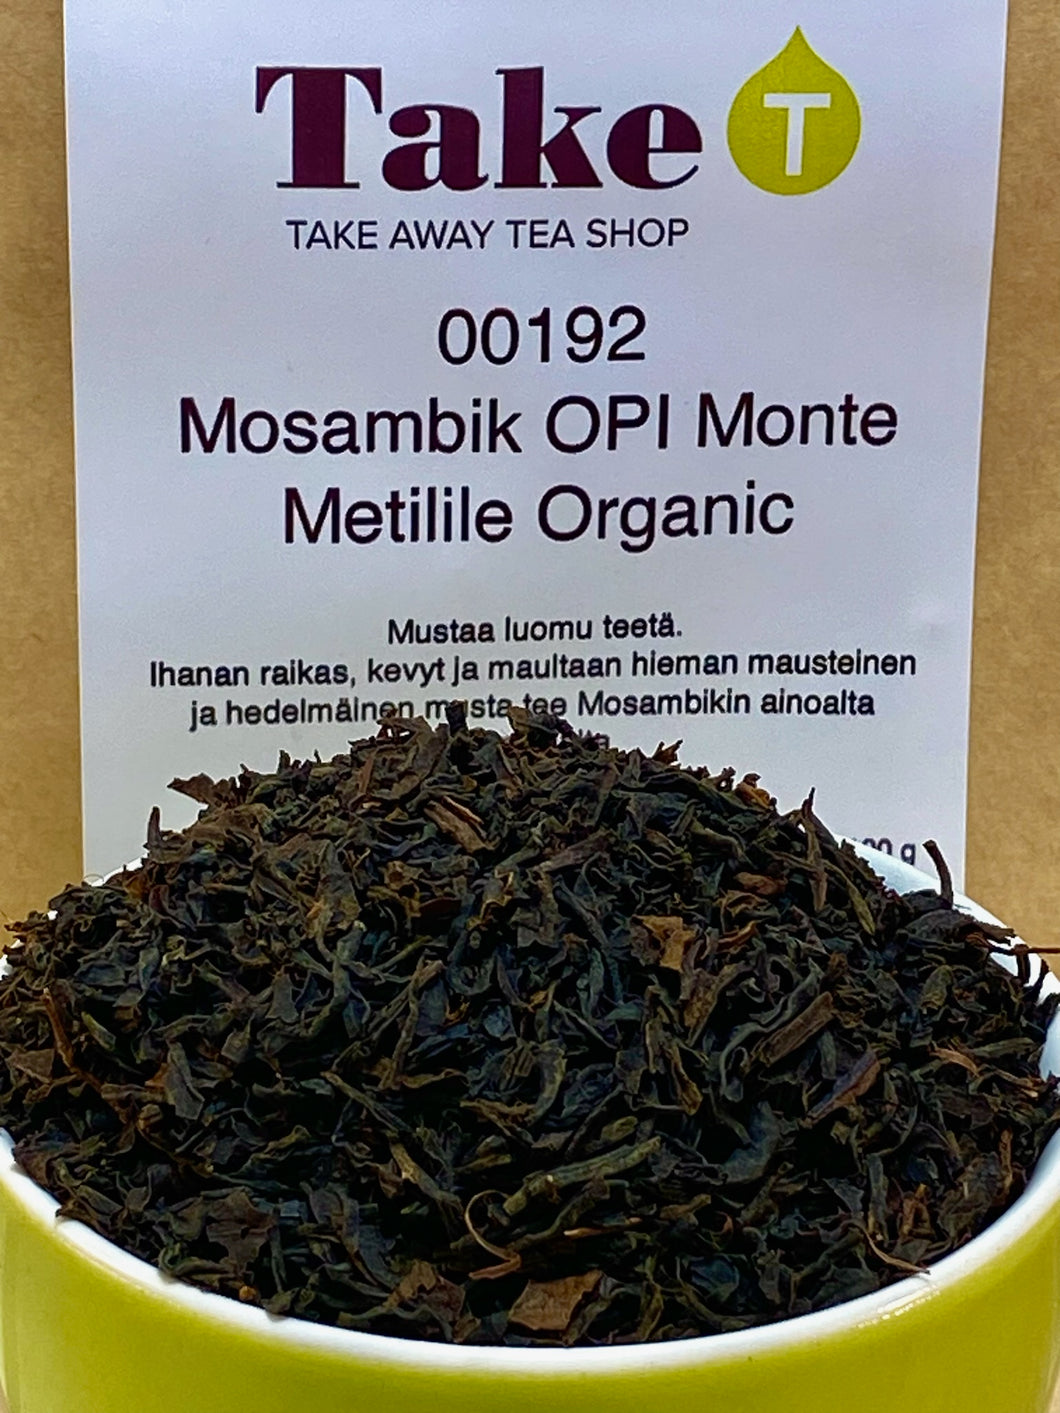 Mosambik OPI Monte Metilile Organic